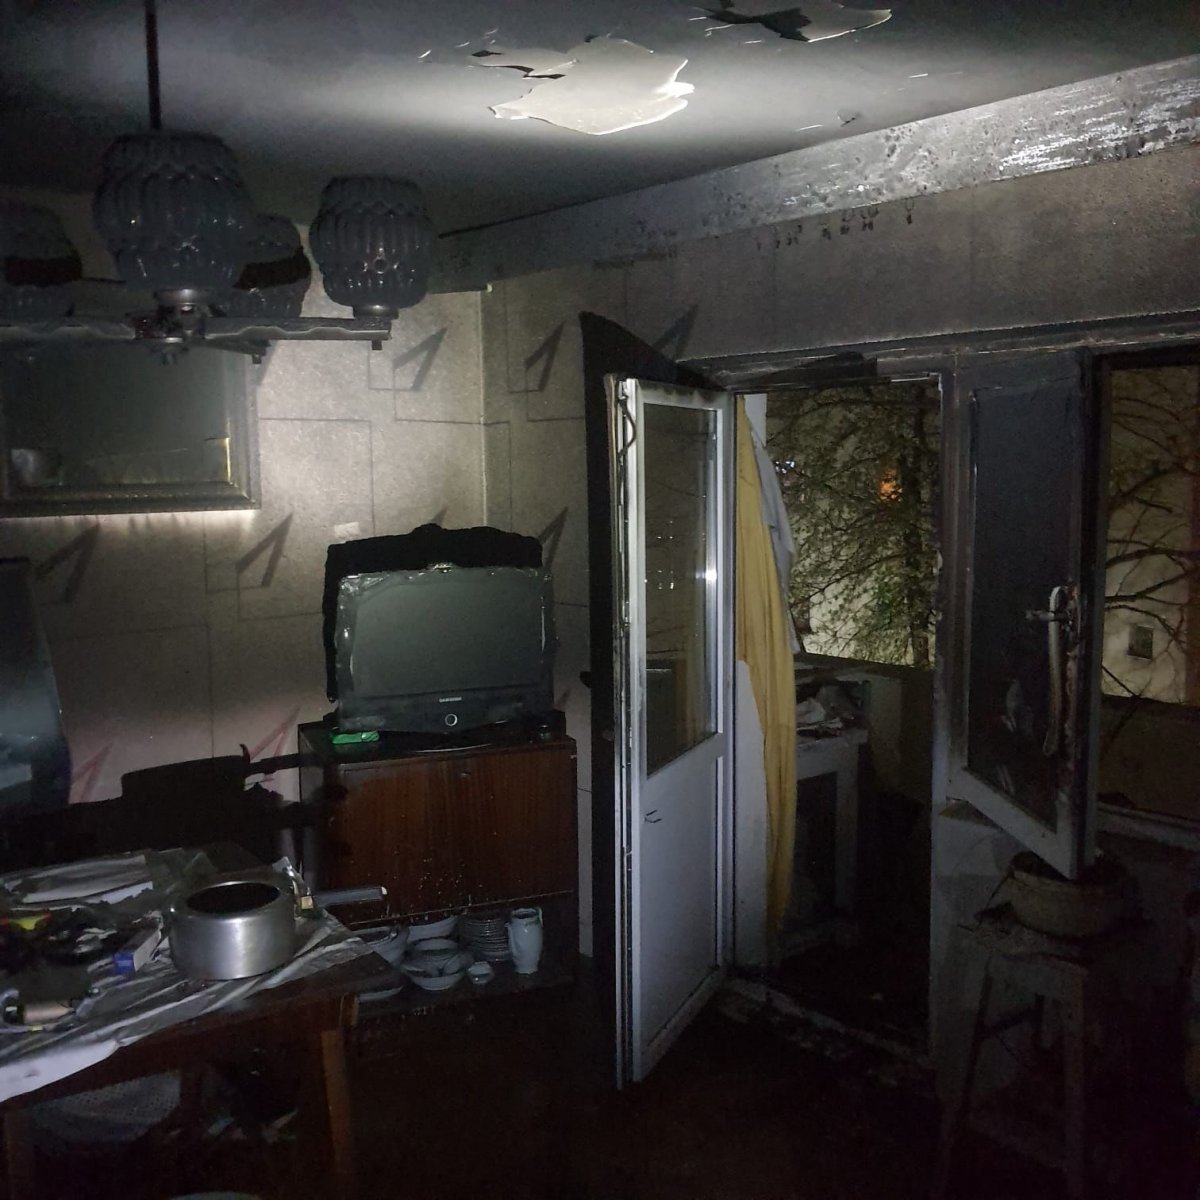  Incendiu la un apartament în municipiul Arad pe strada Prieteniei